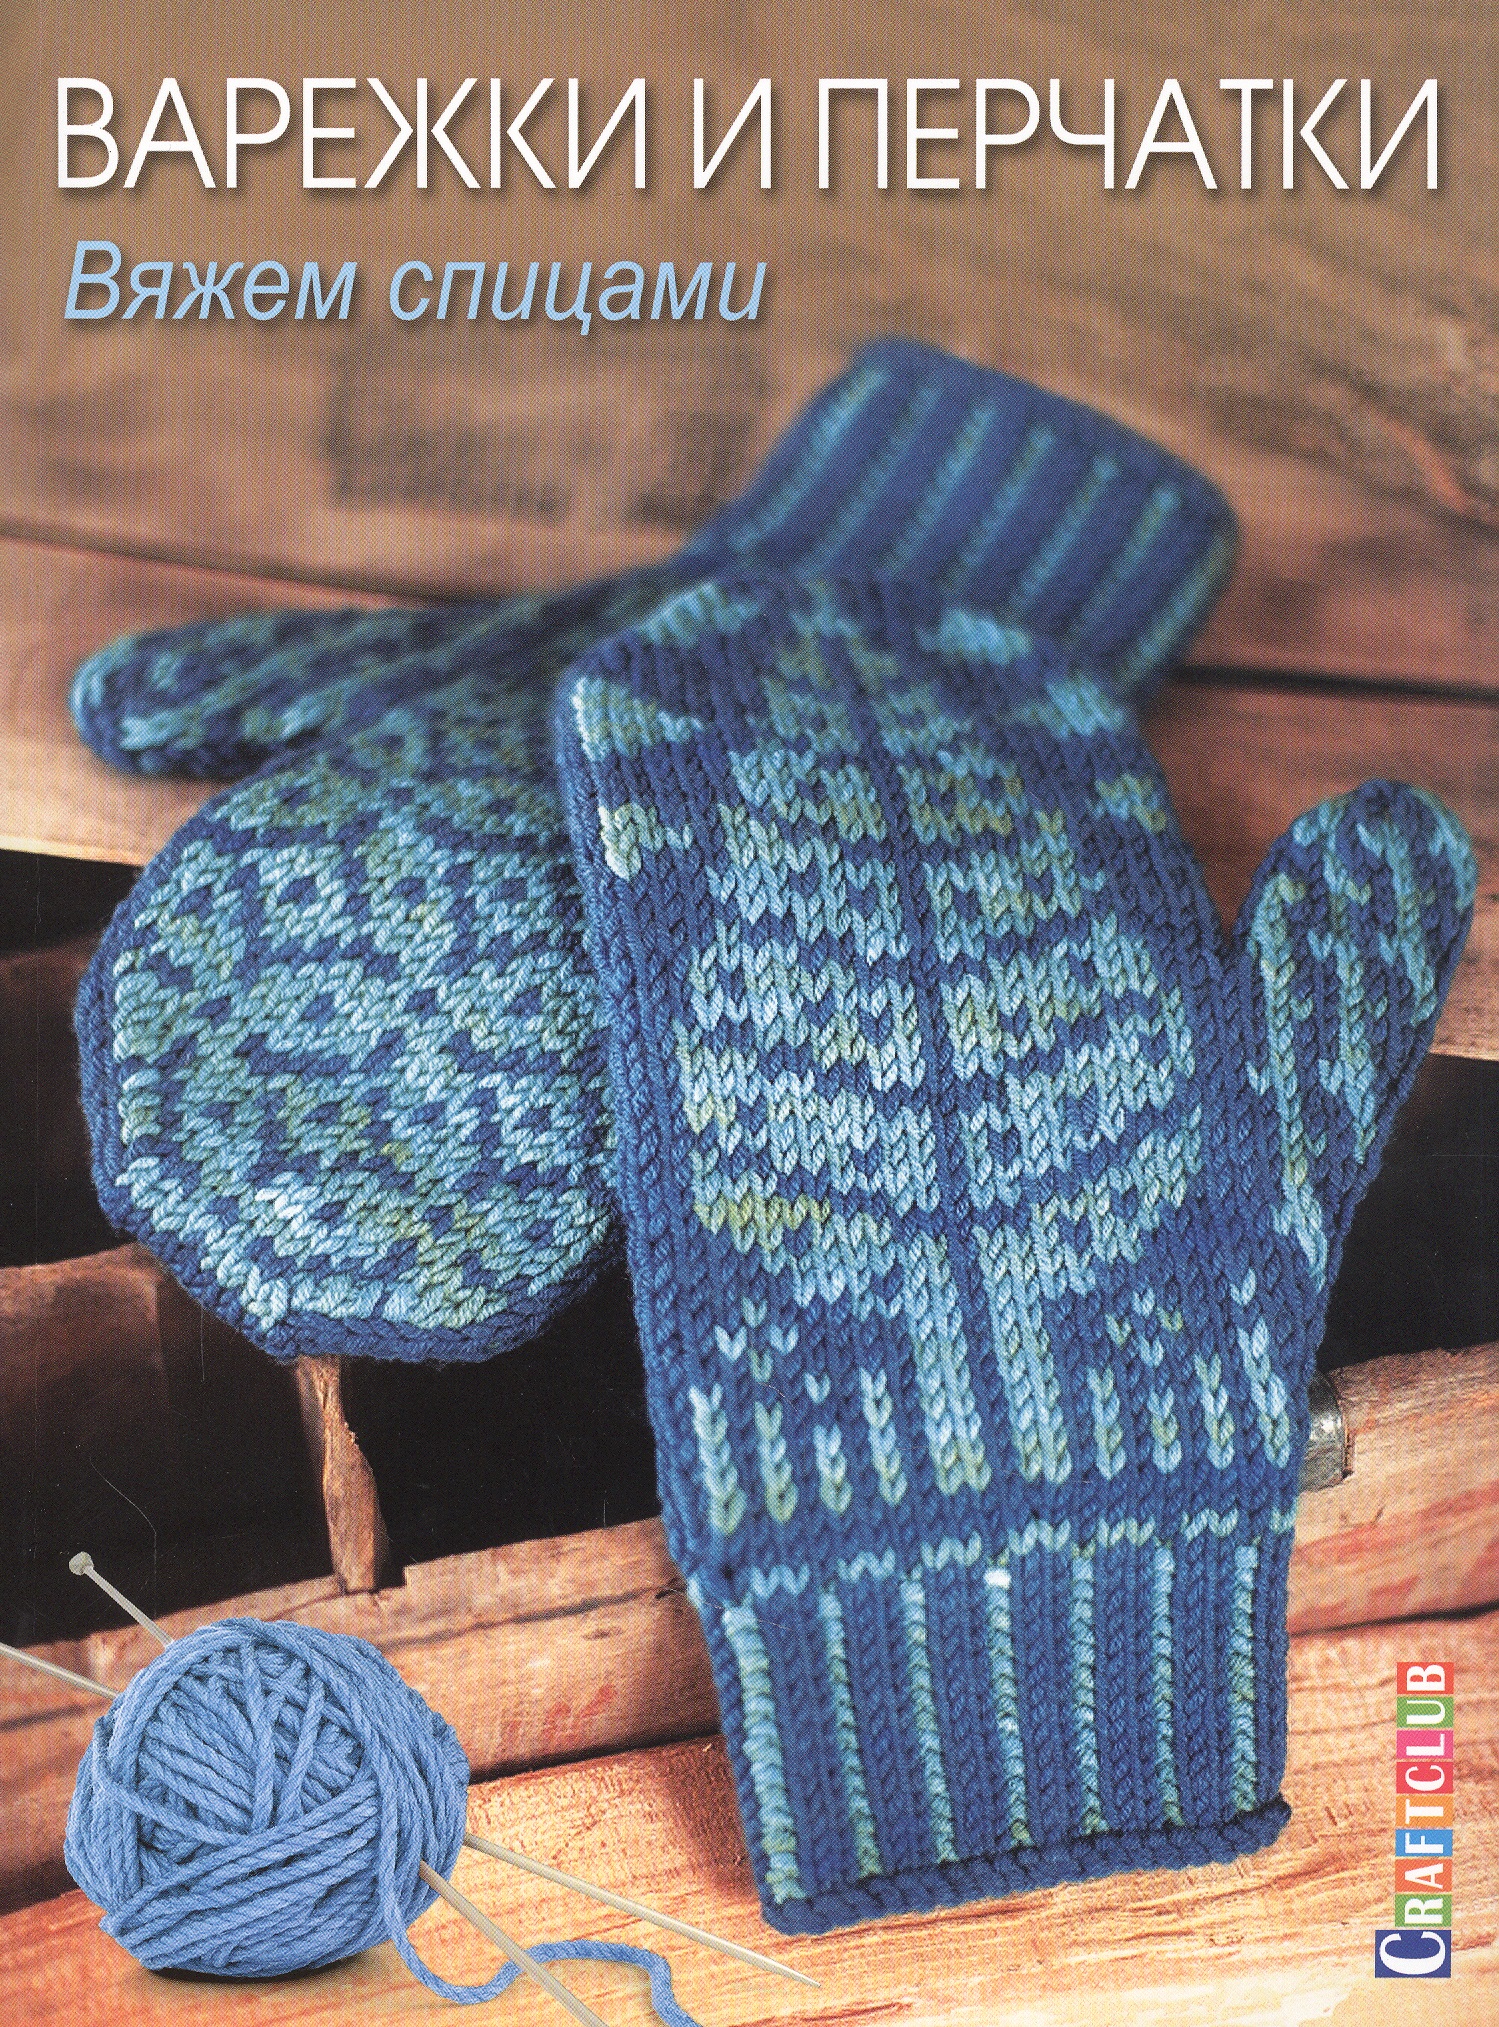 Варежки и перчатки: Вяжем спицами вяжем шапки варежки перчатки тапочки носки